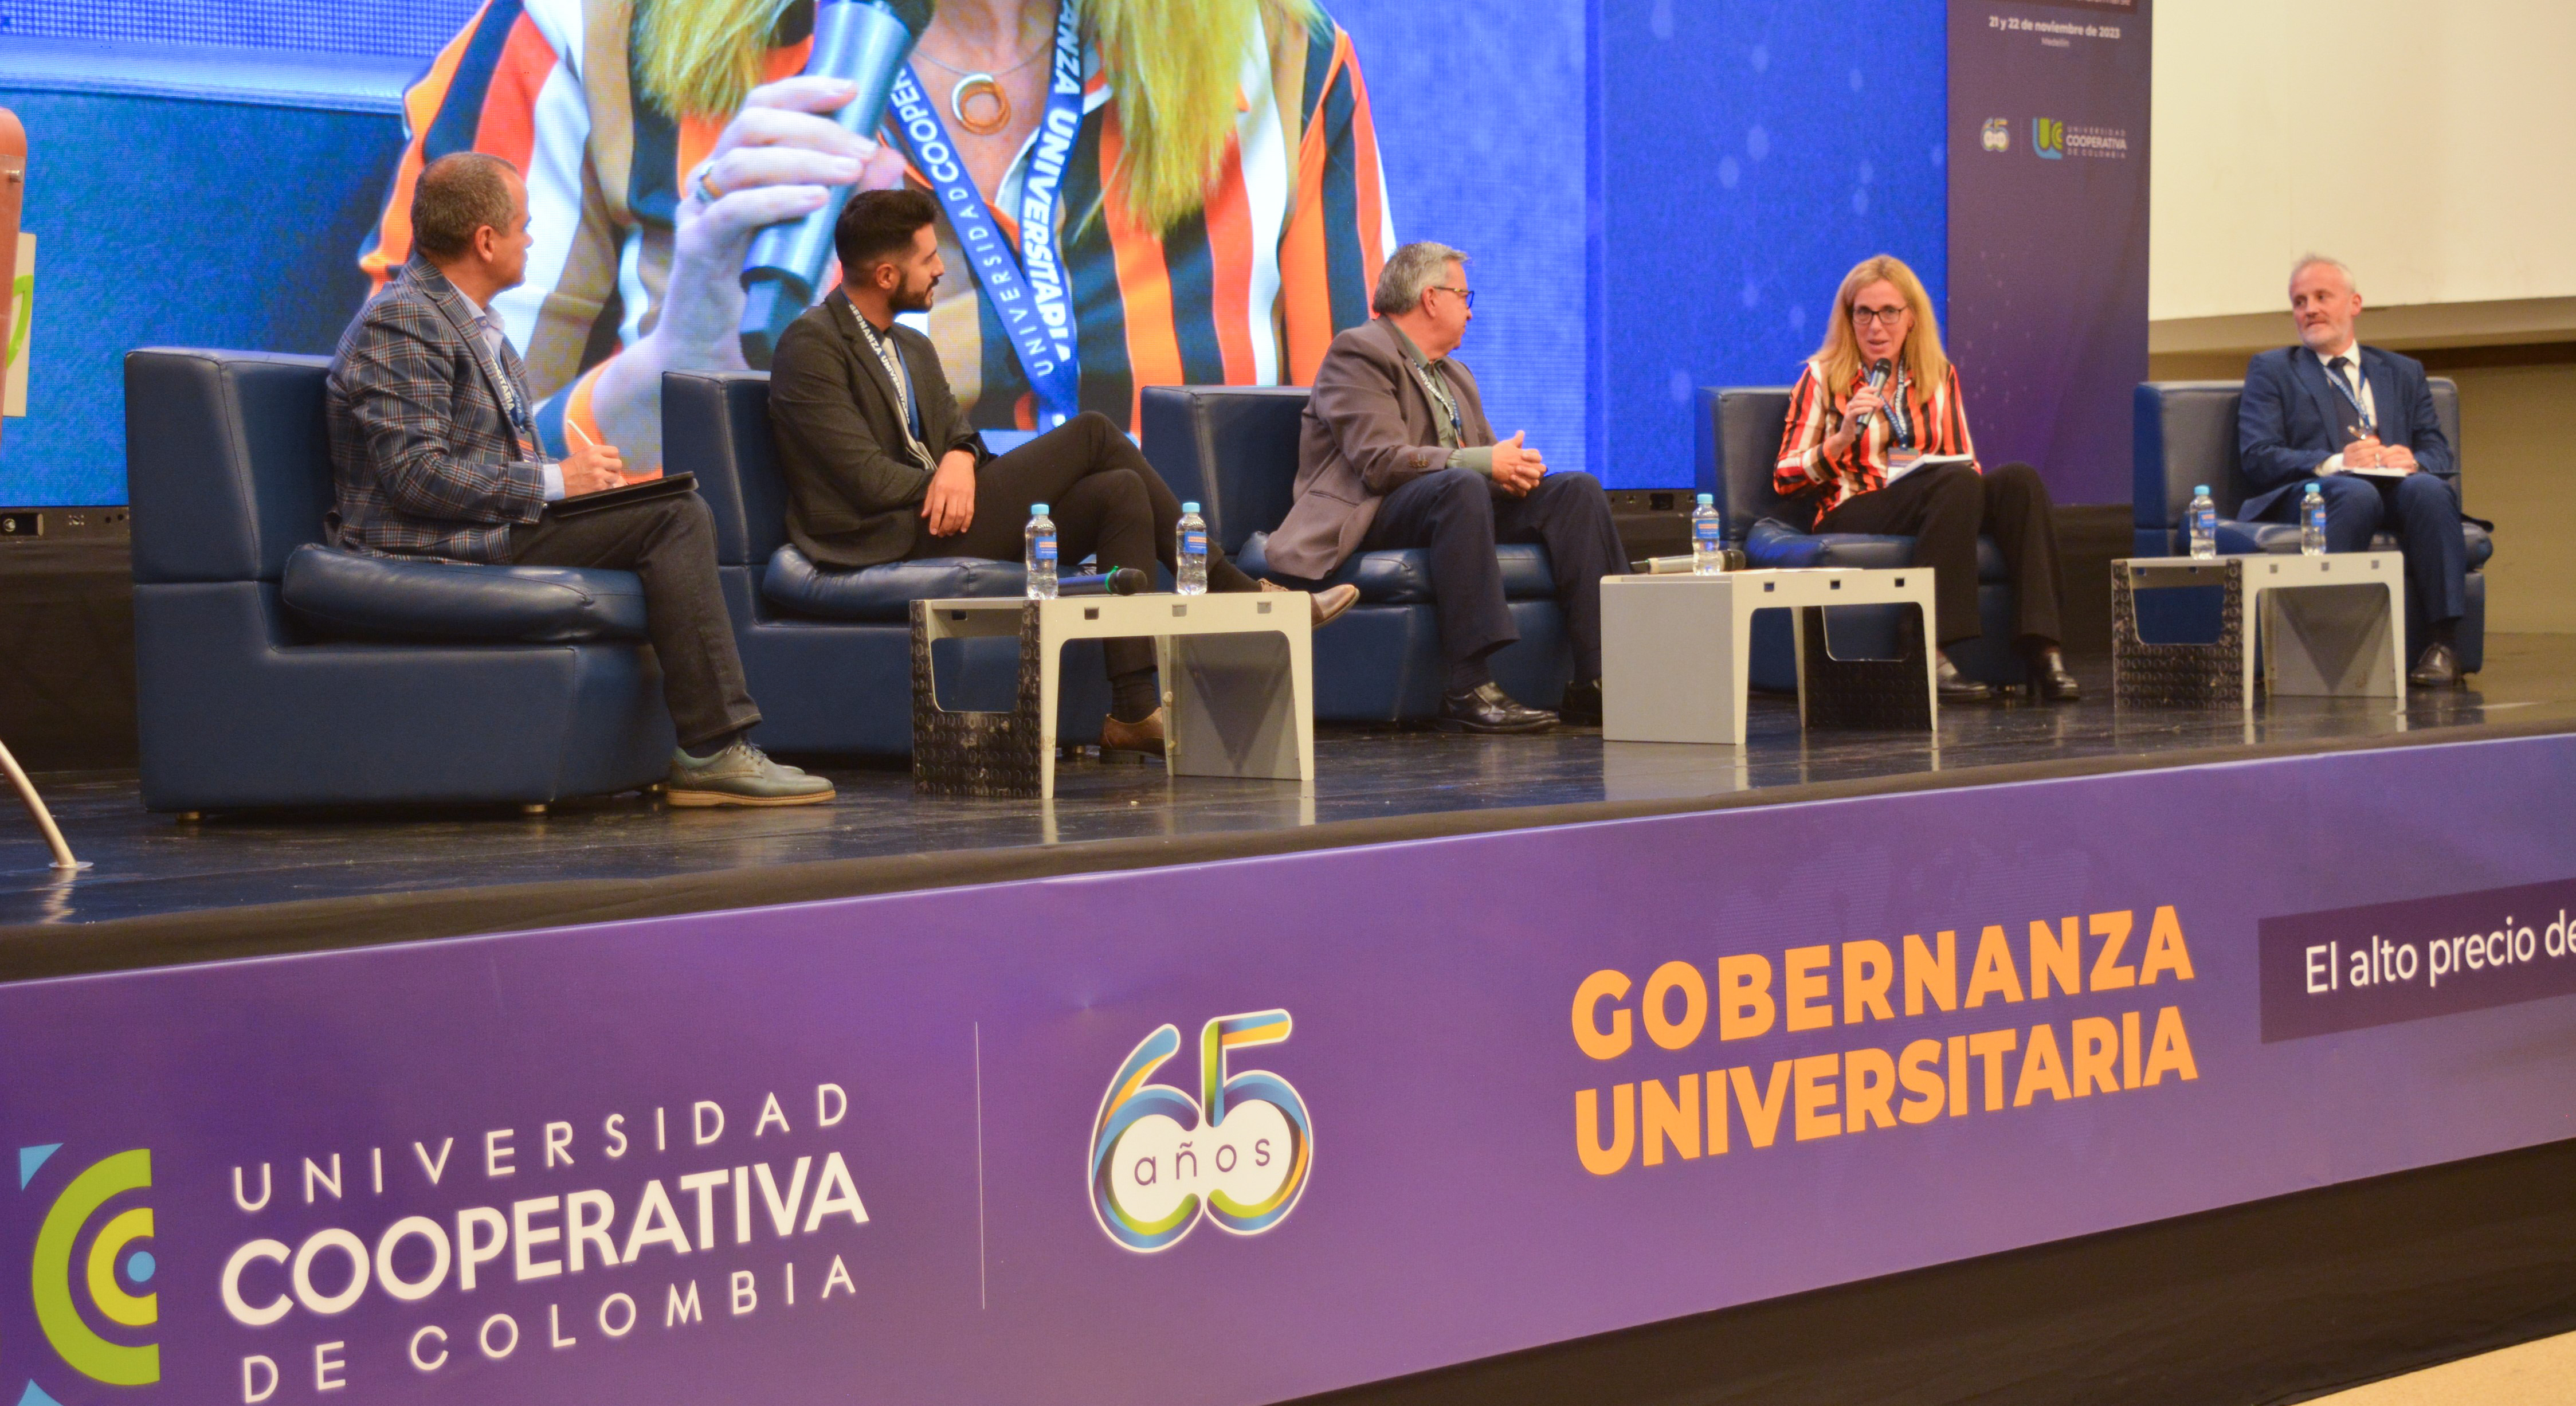 La Universidad Cooperativa de Colombia promueve la transformación educativa en su evento internacional Gobernanza Universitaria: El alto precio de no transformarse